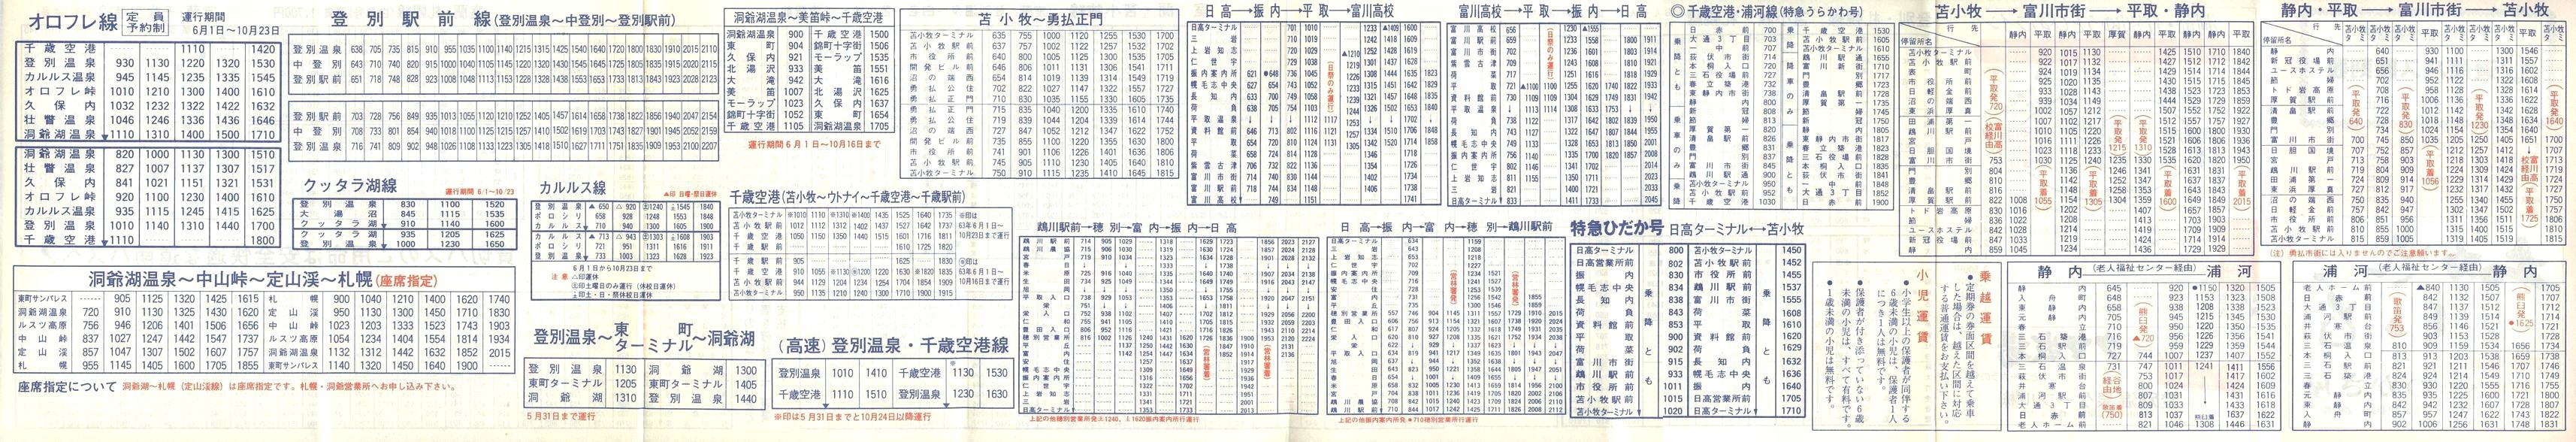 1988-04-01改正_道南バス_登別・苫小牧管内時刻表裏面